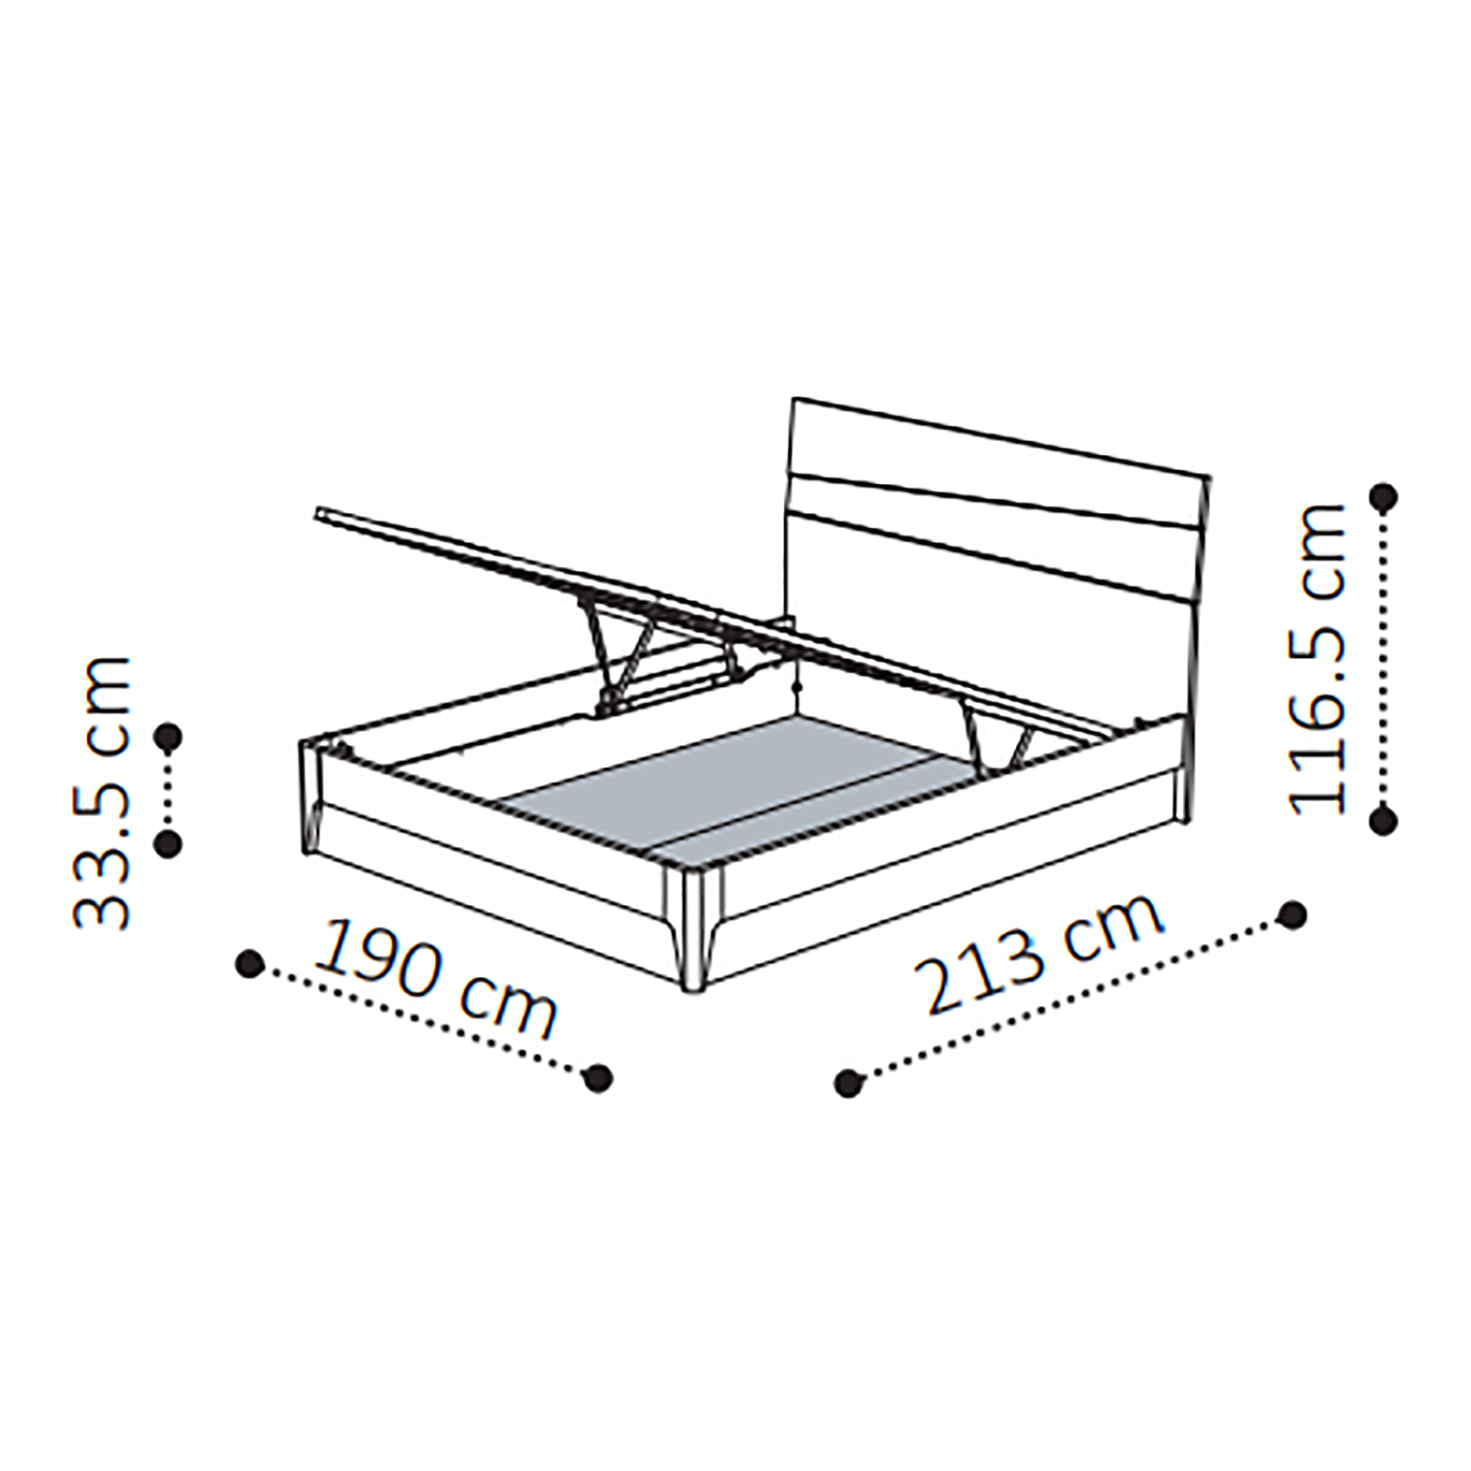 Кровать Camelgroup Tekno, с подъемным механизмом, цвет: серебристая береза, 180x200 см (156LET.04PL)156LET.04PL